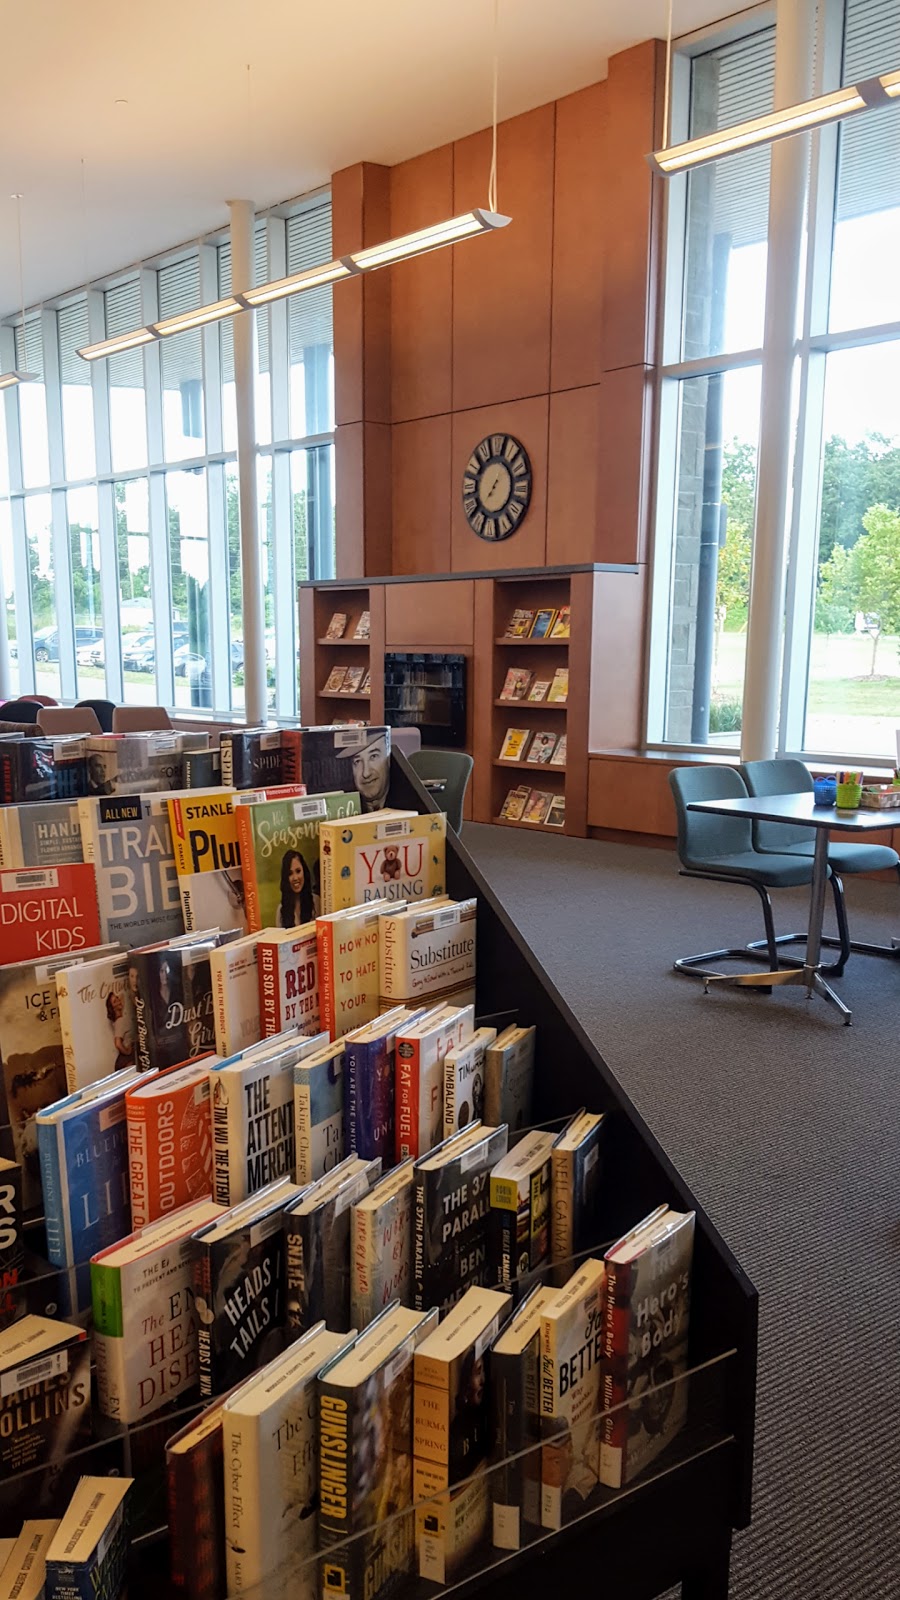 Komoka Library | library | 1 Tunks Ln, Komoka, ON N0L 1R0, Canada | 5196571461 OR +1 519-657-1461